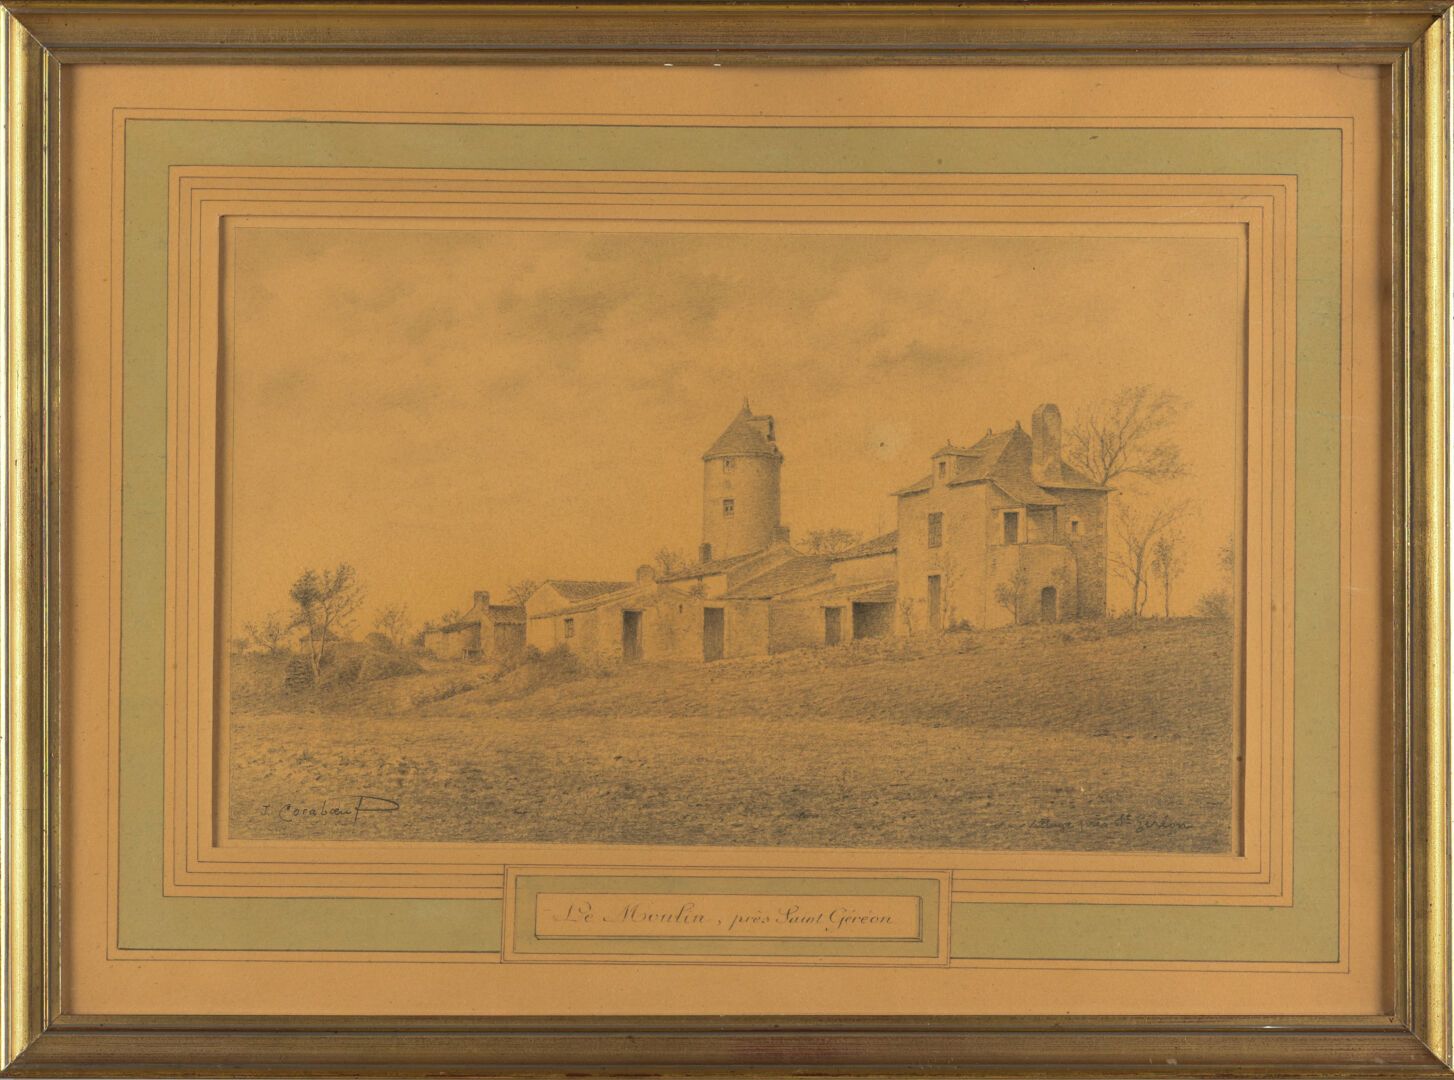 Null 让-科拉博夫(Jean CORABOEUF) (1870-1947)
圣日耳曼附近的磨坊
铅笔画
左下方有签名